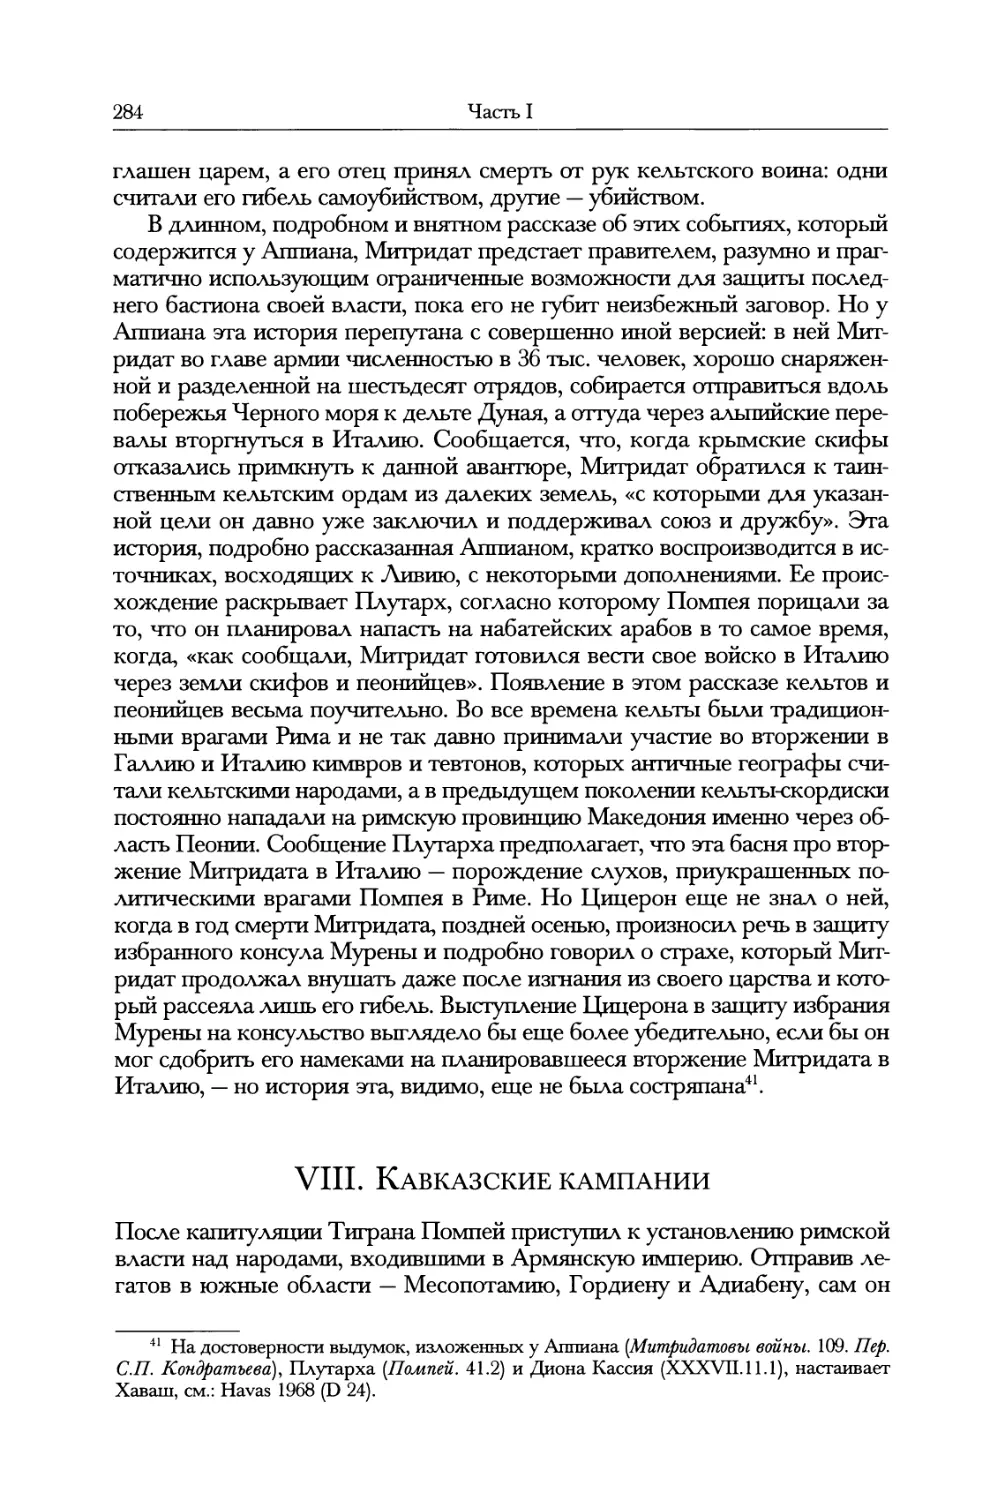 VIII. Кавказские кампании